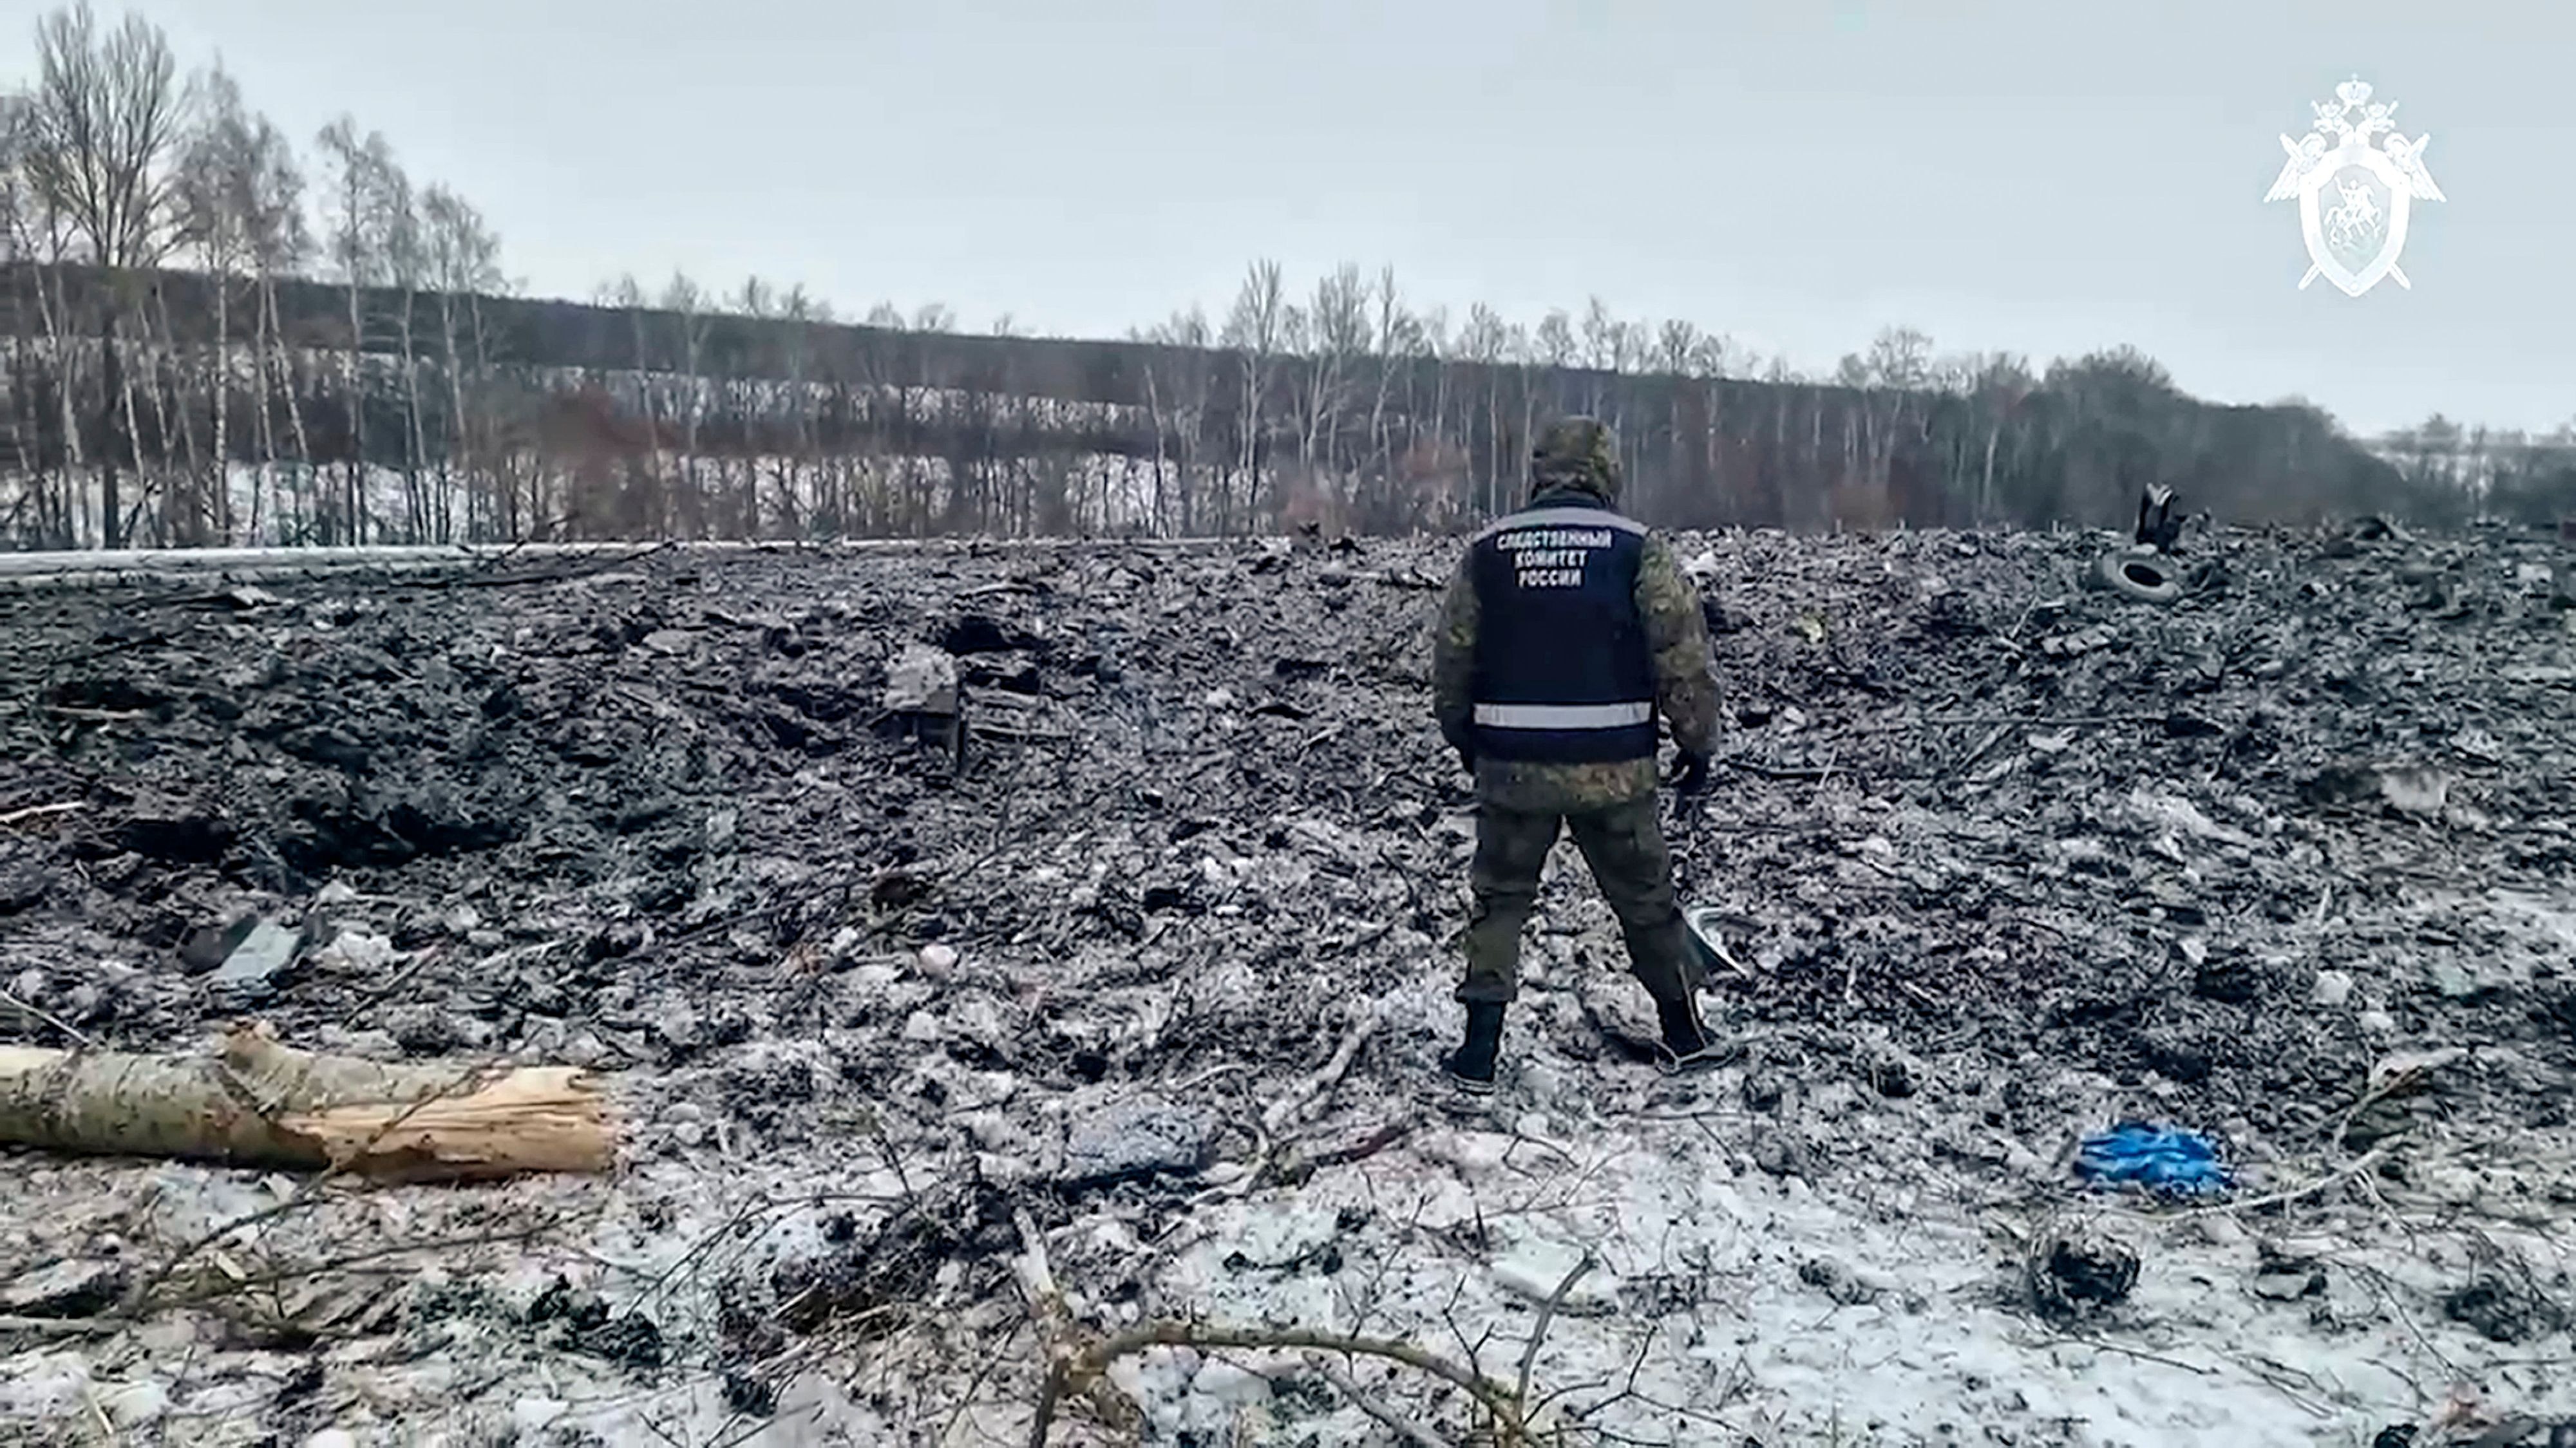 newsblog: russische ermittler veröffentlichen video zu flugzeugabsturz